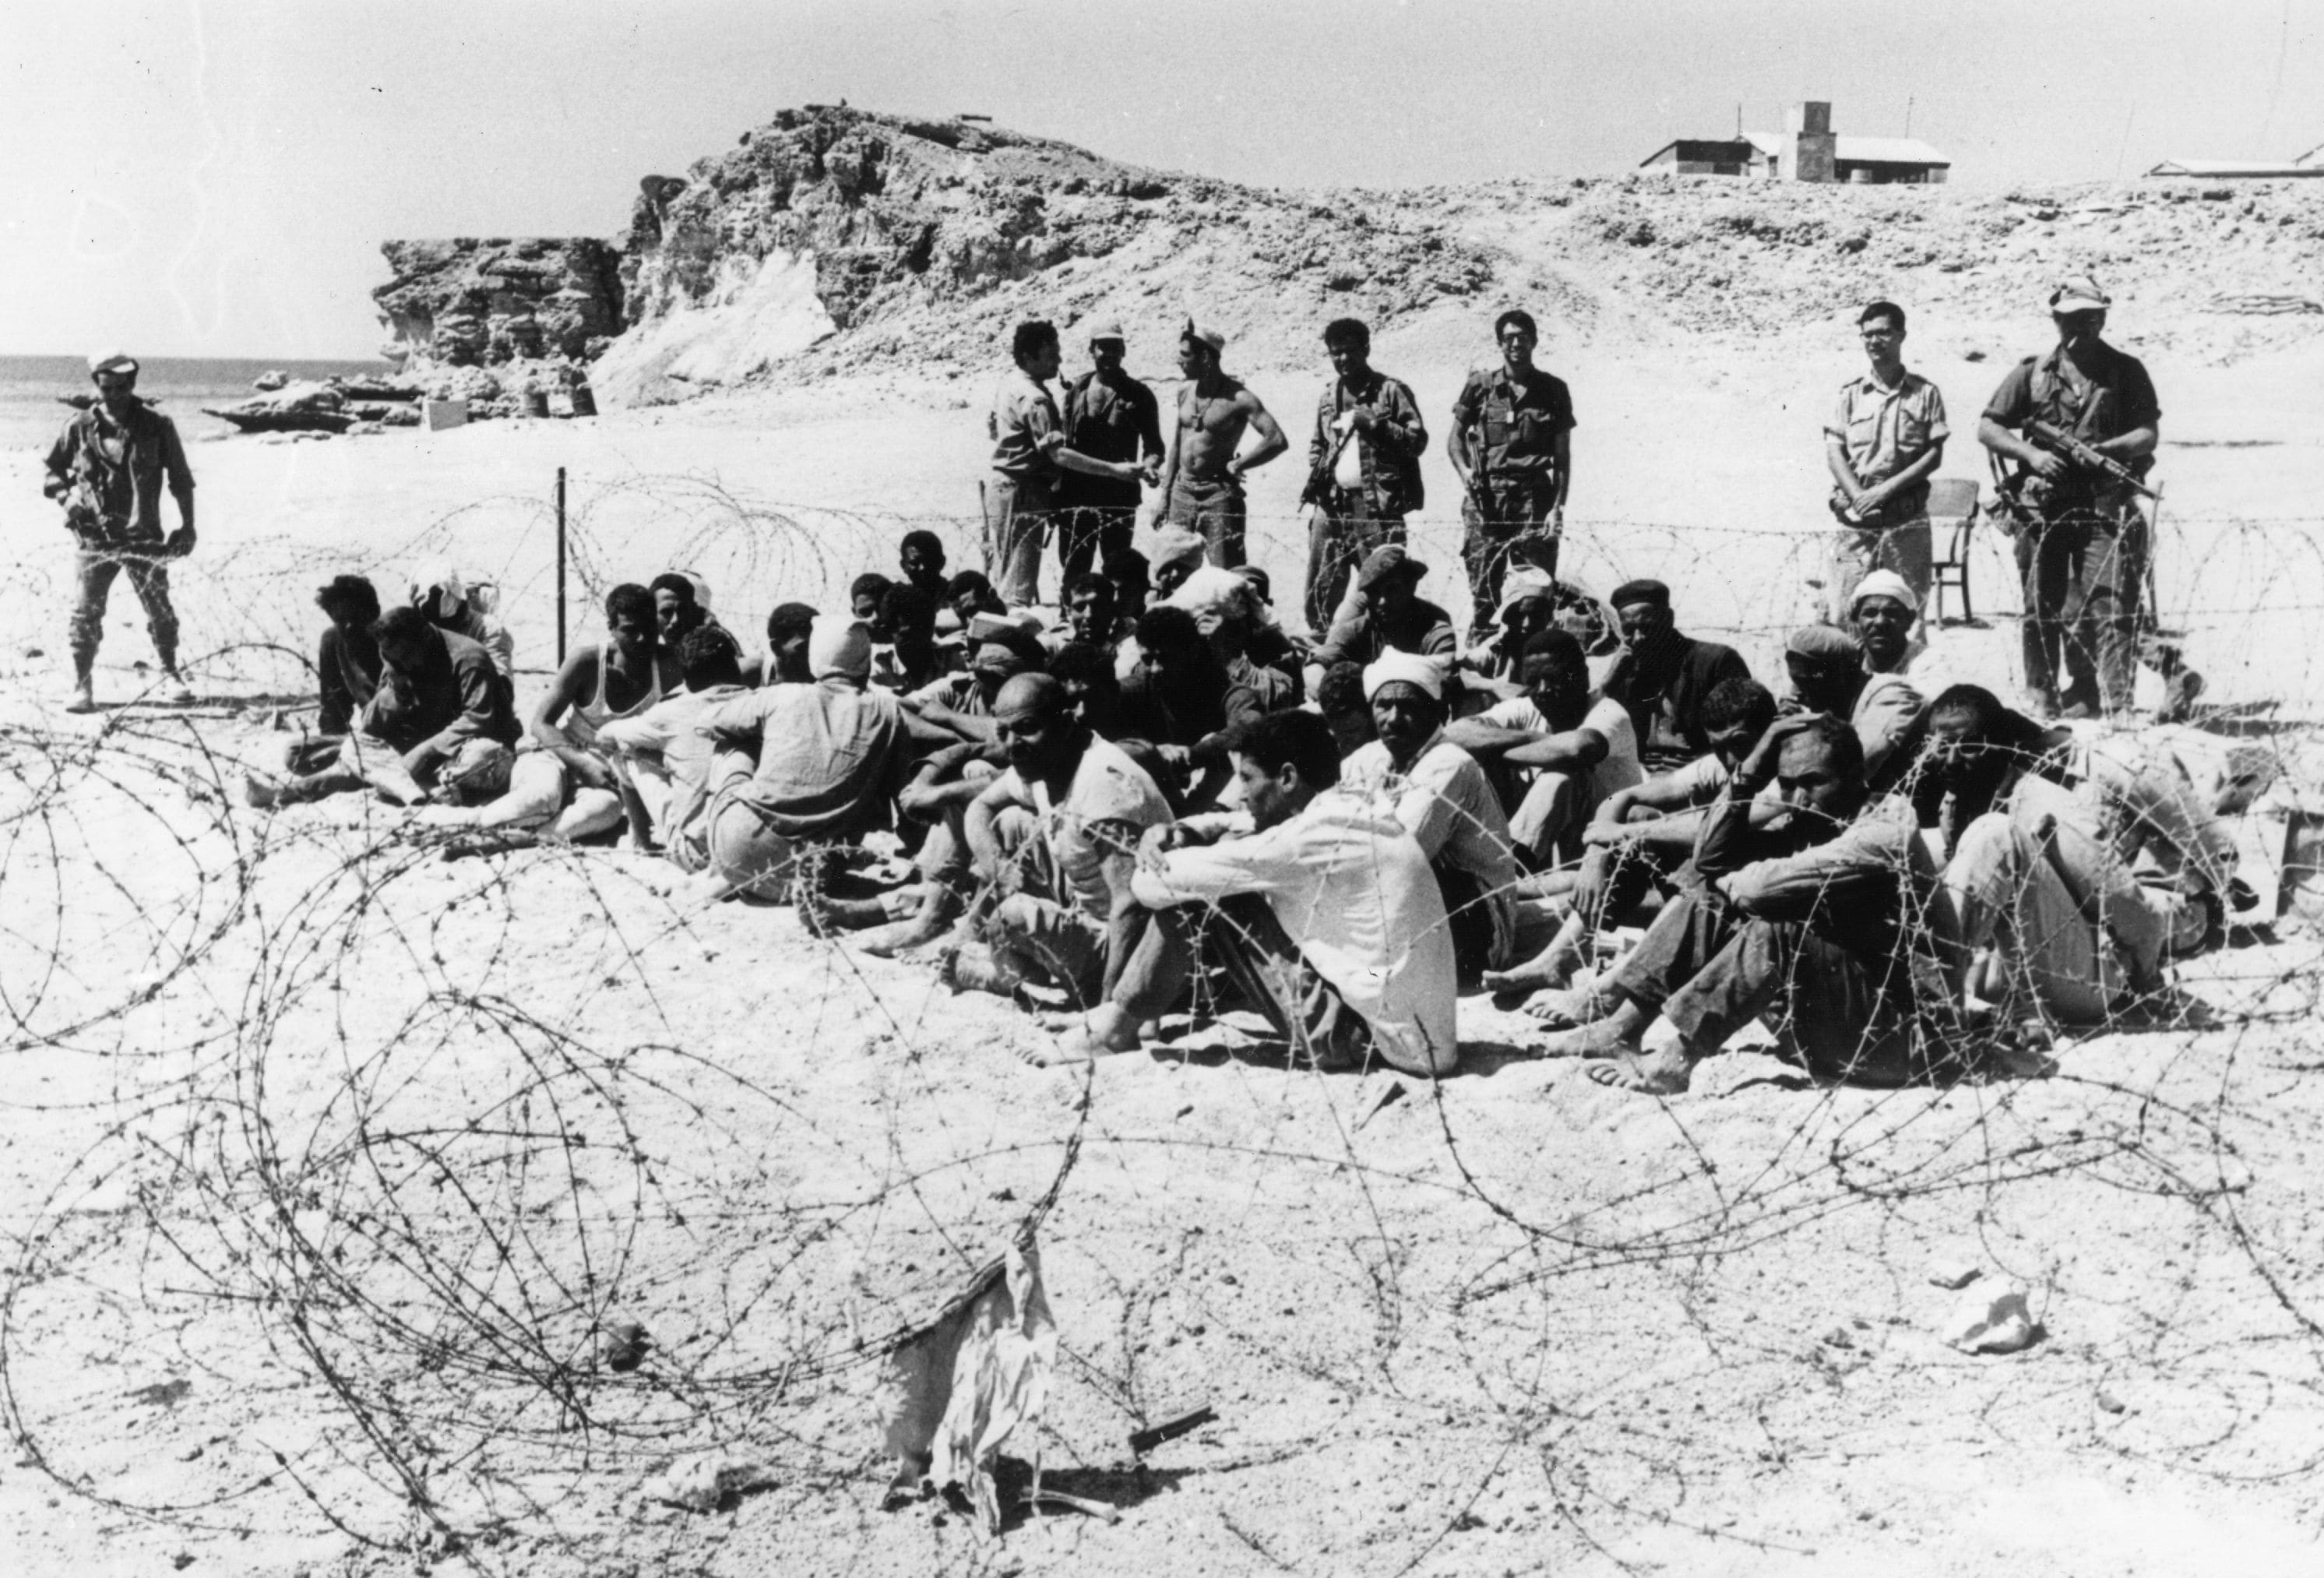 Soldati egiziani prigionieri durante la Guerra dei Sei Giorni nel 1967, durante la quale il Canale di Suez è uno dei teatri di battaglia